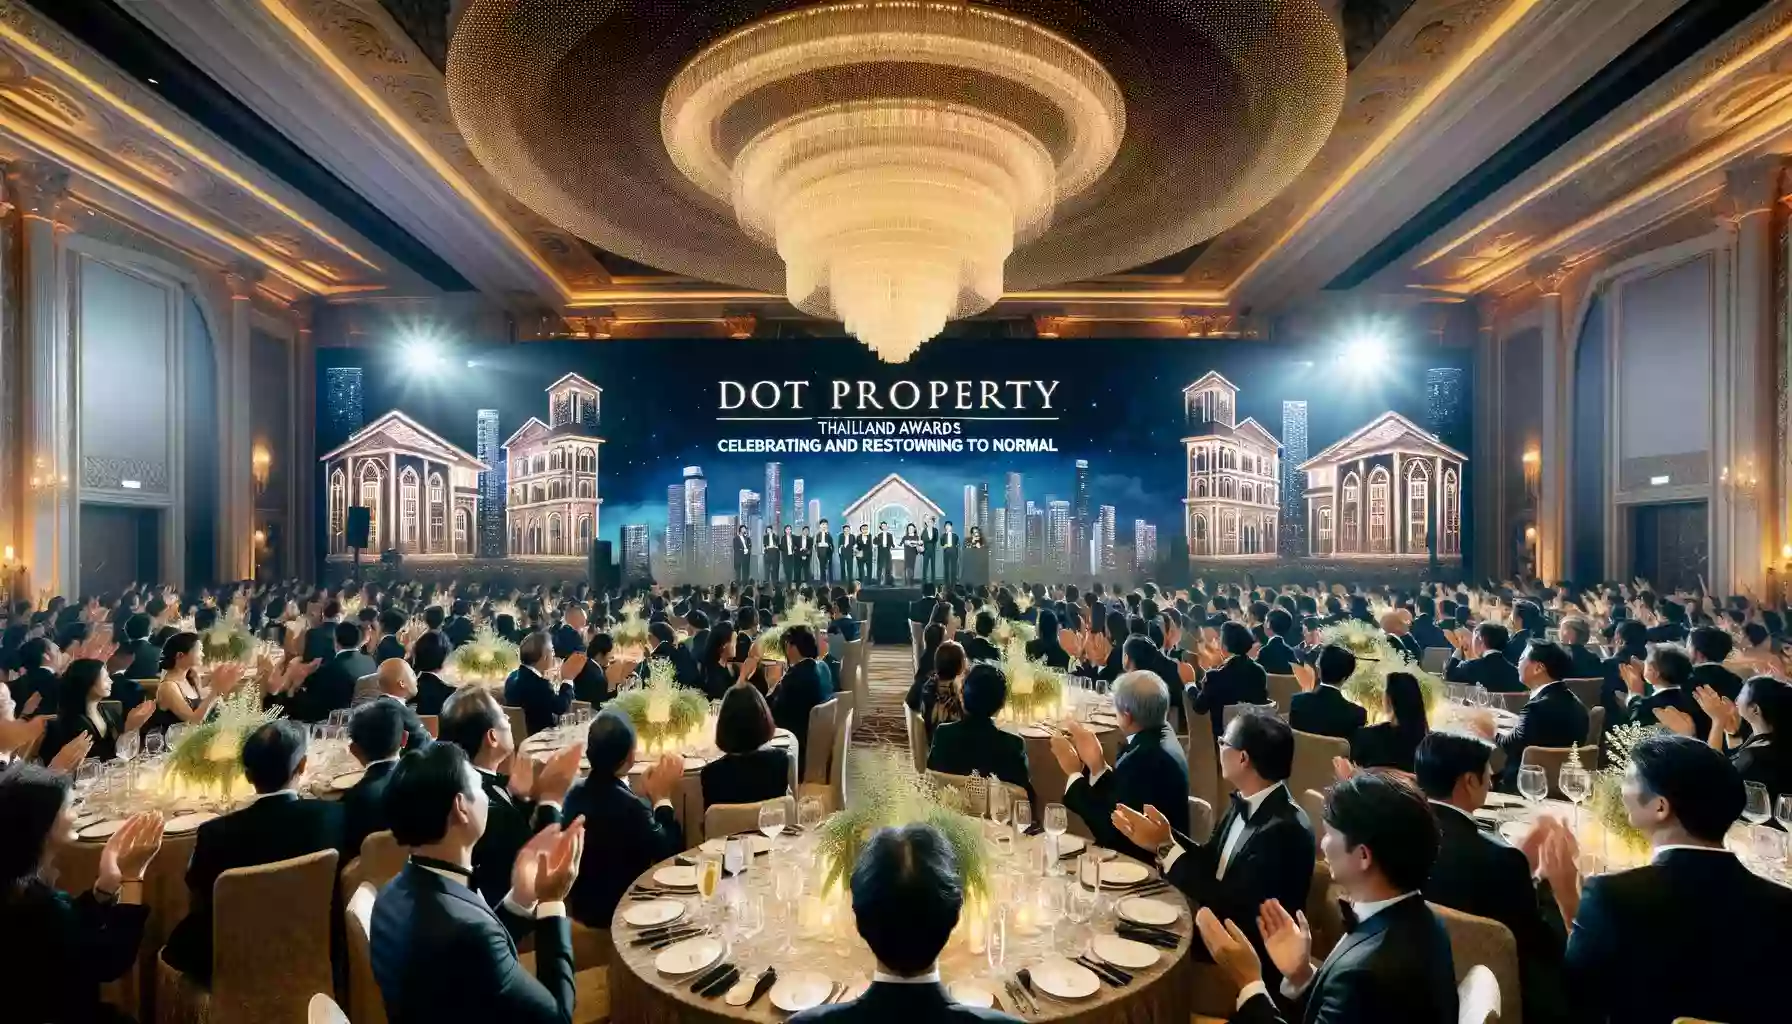 Dot Property Thailand Awards 2020 подчеркивает устойчивость сектора недвижимости в сложный год.